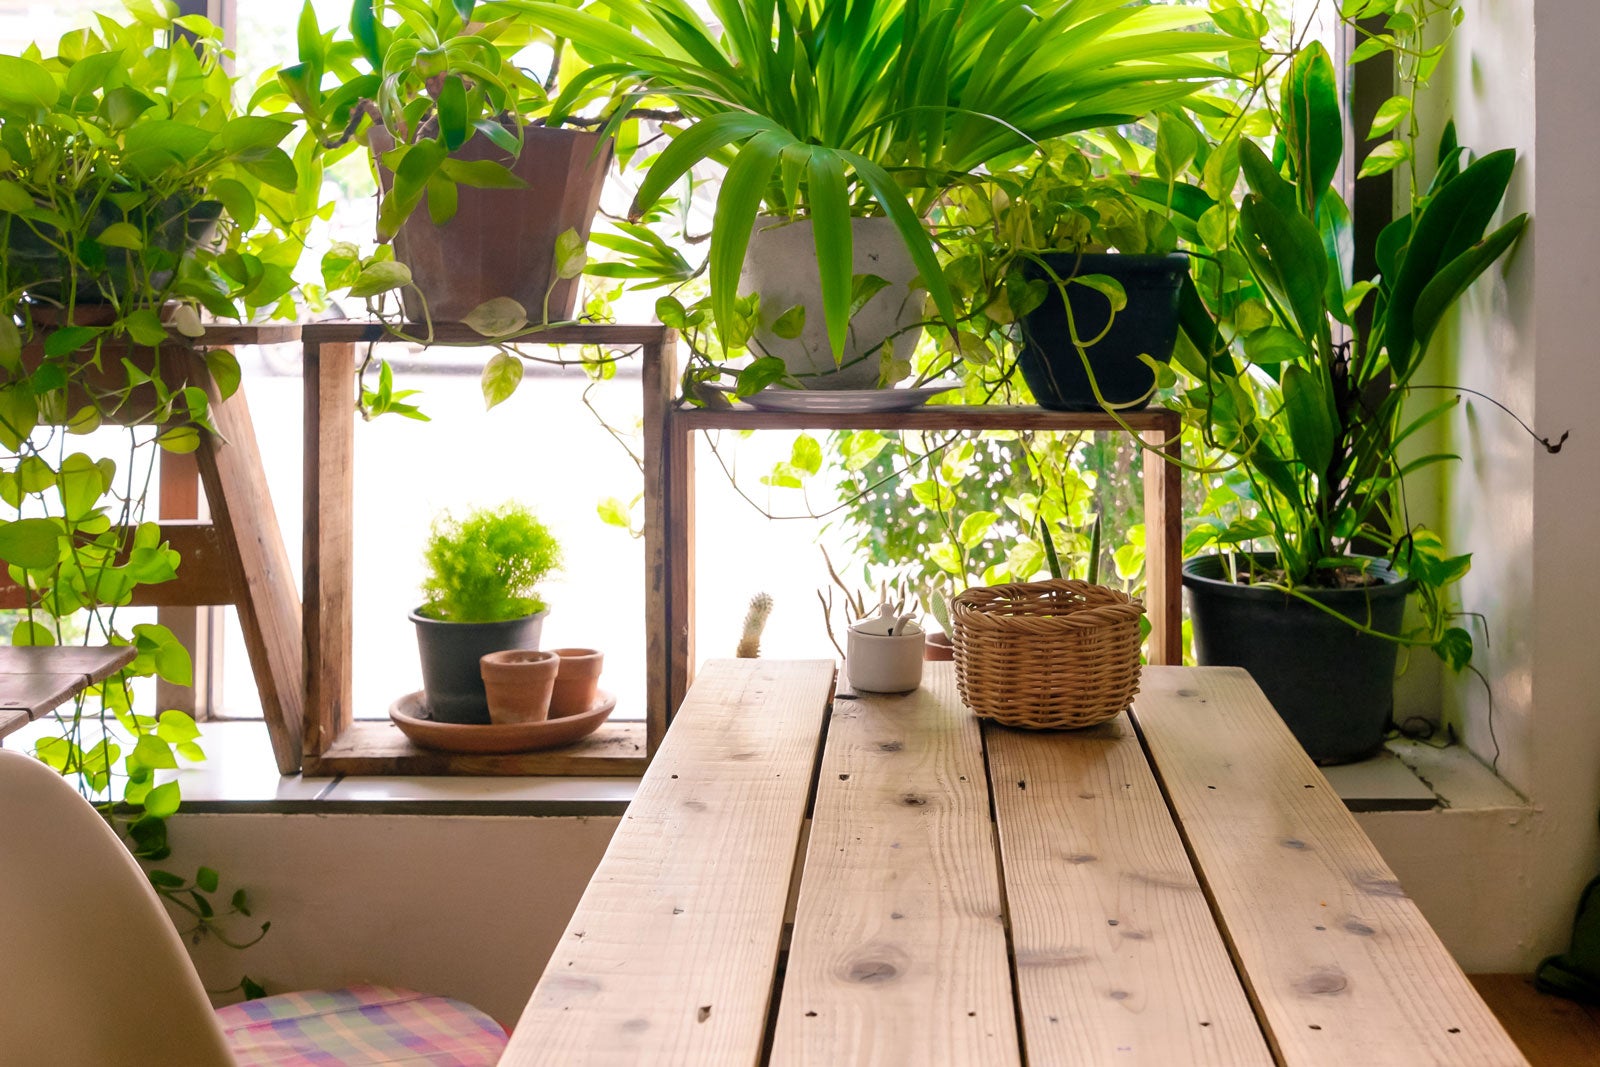 How To Start An Indoor Garden Room